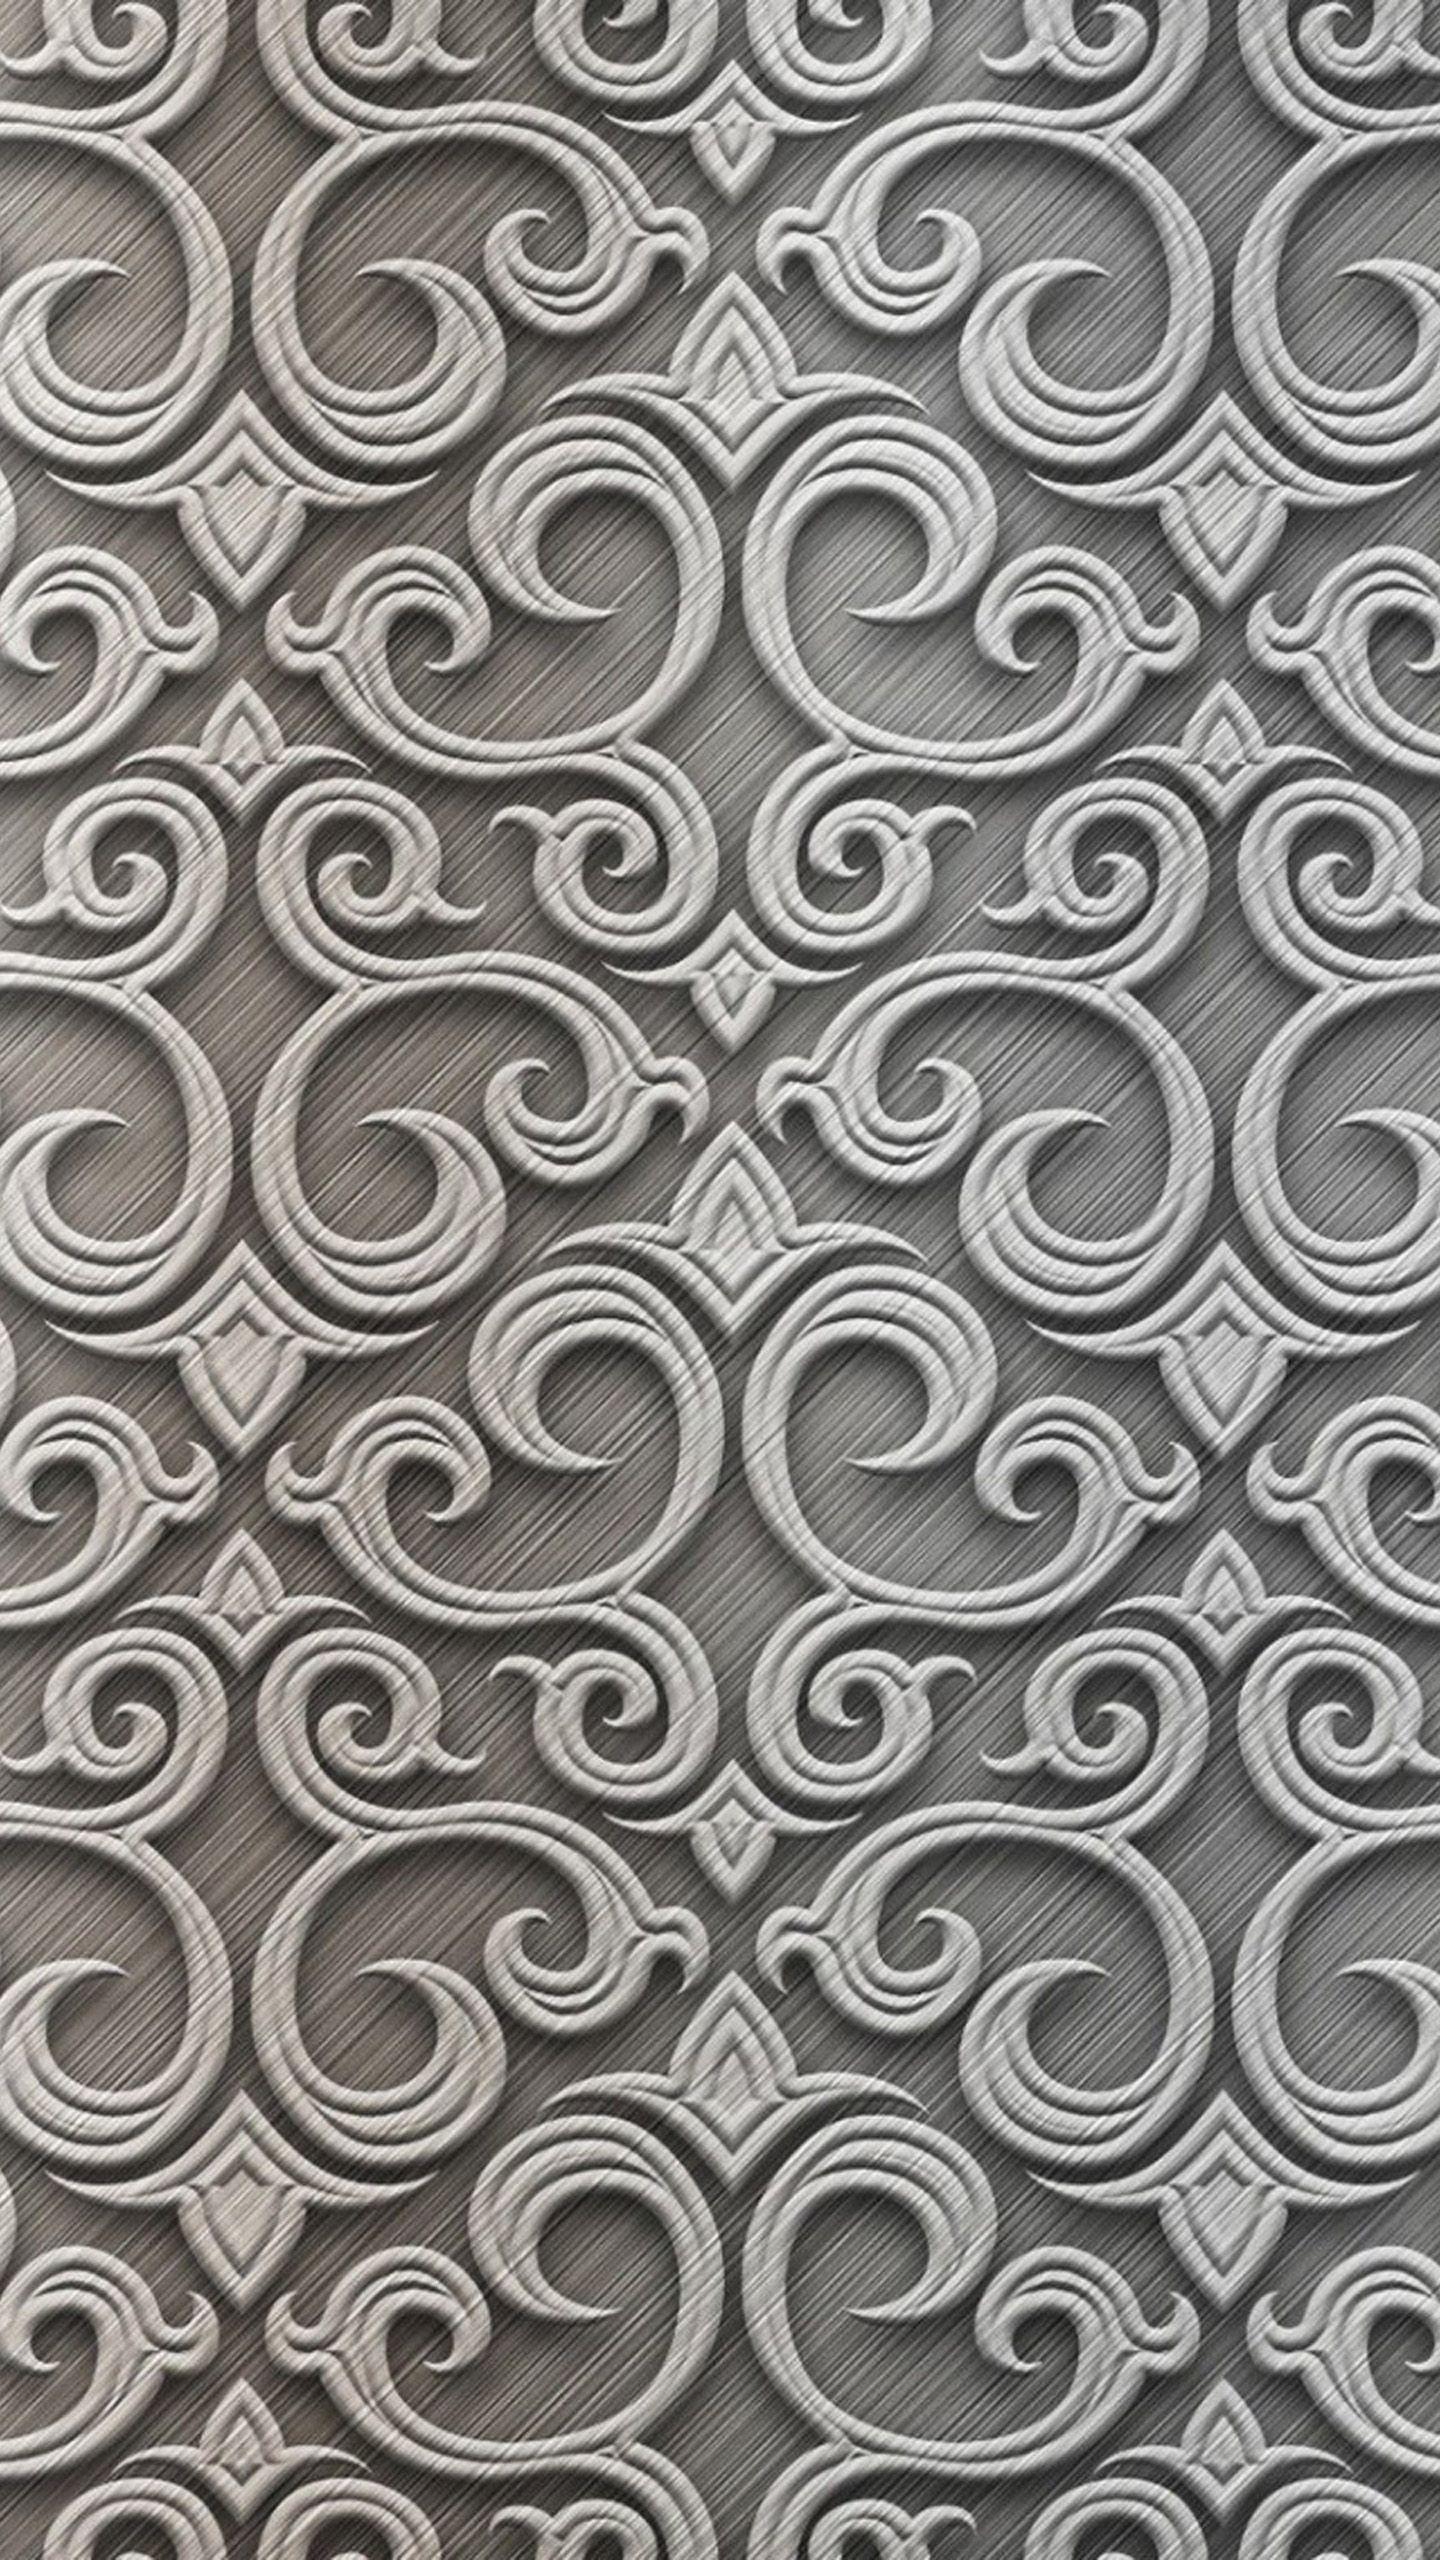 Baroque Silver LG G3 Wallpaper. lg g3 wallpaper